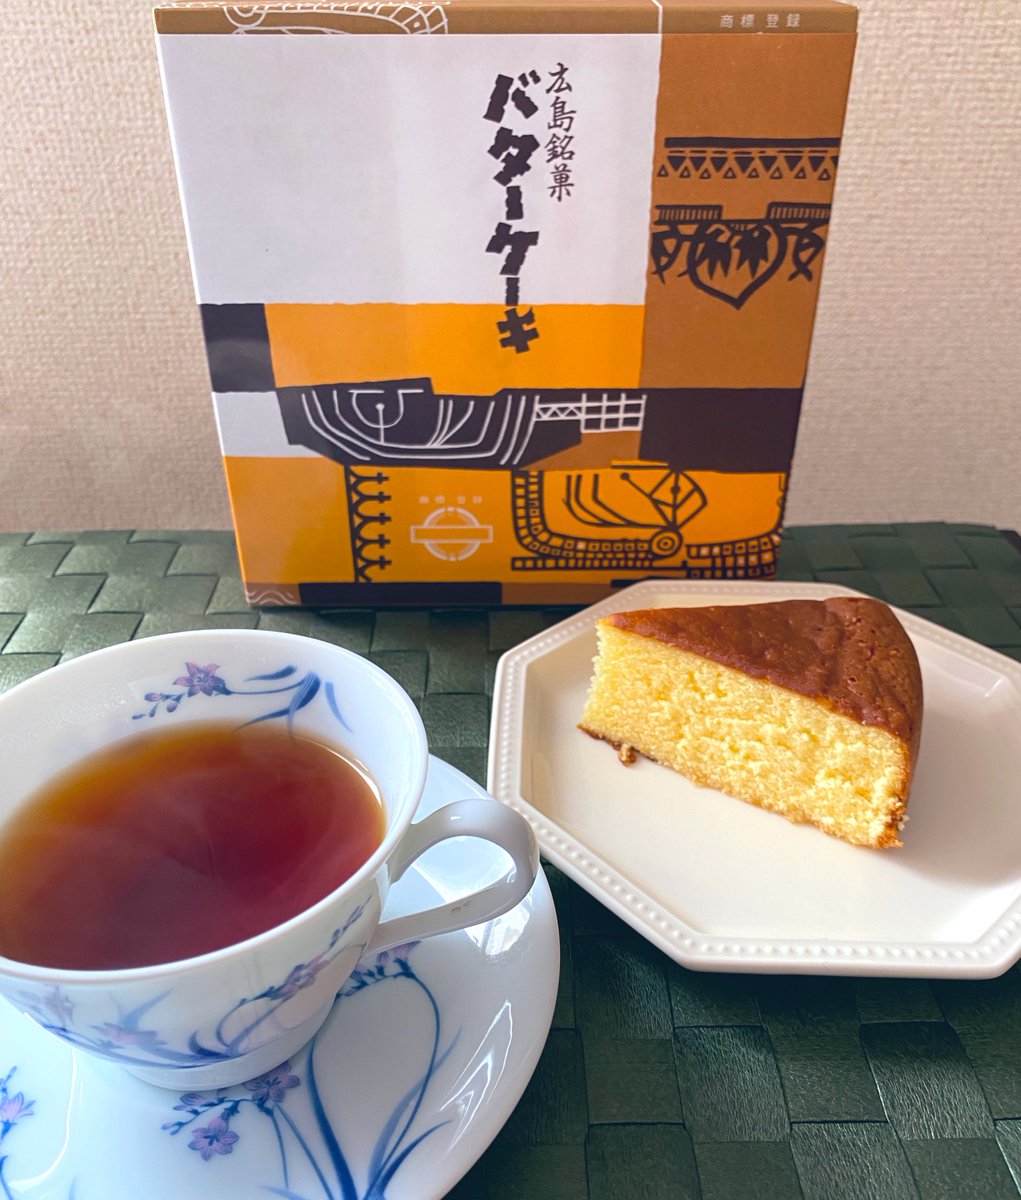 test ツイッターメディア - 金土と出張(と観光)で広島に行っていました。
大人気と聞いて長崎堂のバターケーキを入手しました！素朴なのに後をひくおいしさ💓一人でワンホール食べれるか不安でしたが余裕な気がしてきました。
紅茶は神戸紅茶のロイヤルブレンド。 https://t.co/UIy5GbZcFN